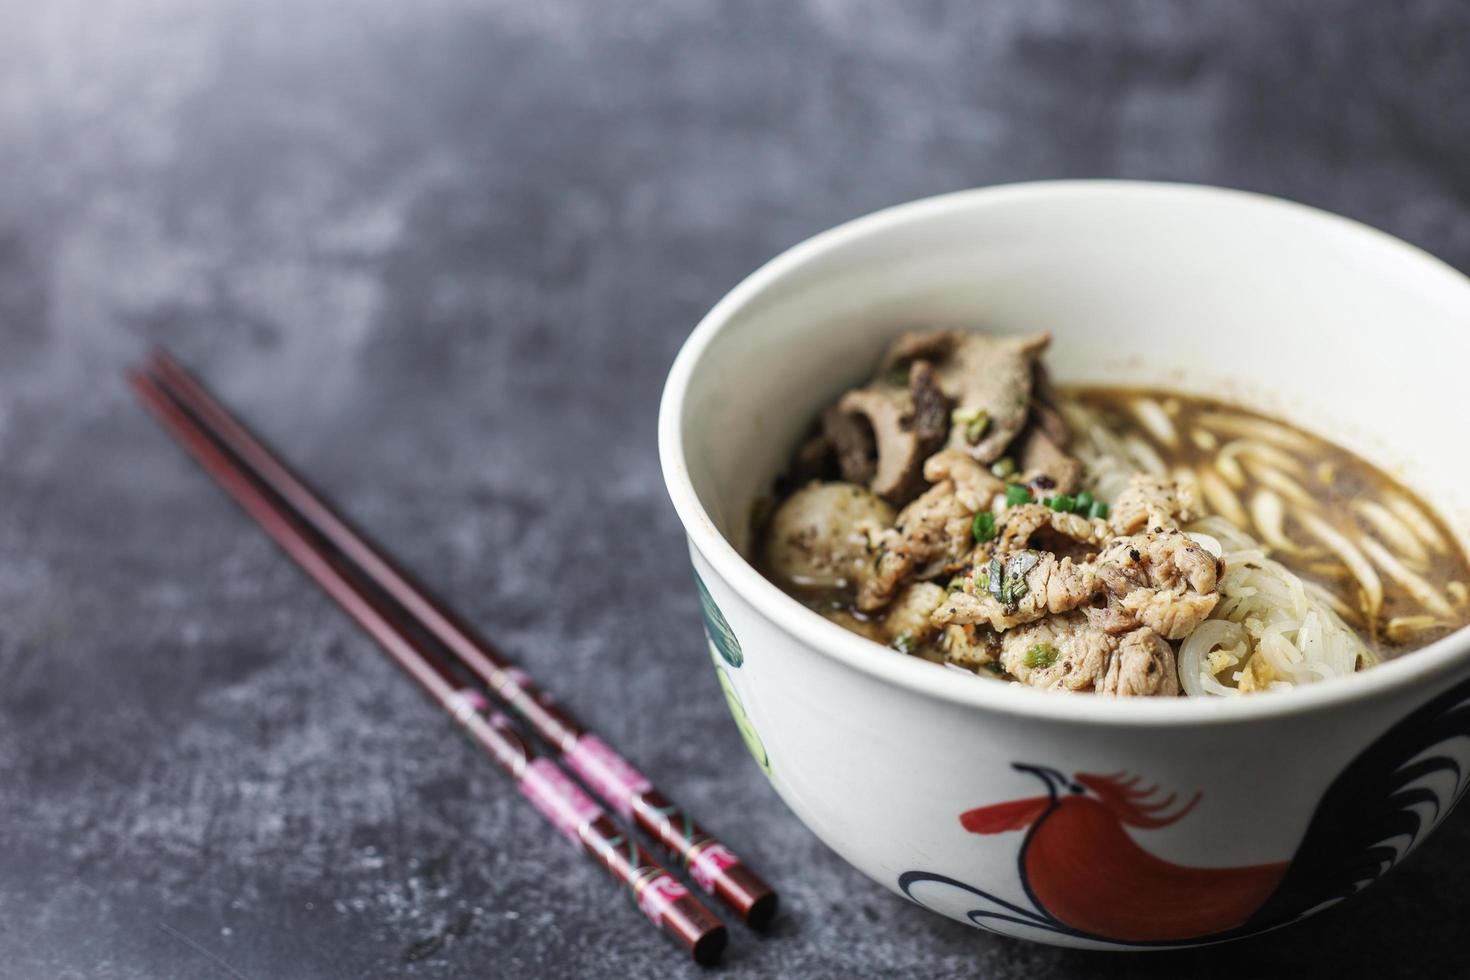 thai boat noodles es la sopa de fideos más famosa de Tailandia, la sopa de fideos thai boat o guay tiew reua, la sopa de fideos de arroz espesa con cerdo guisado y bola de cerdo, cerdo estofado e hígado de cerdo, foto